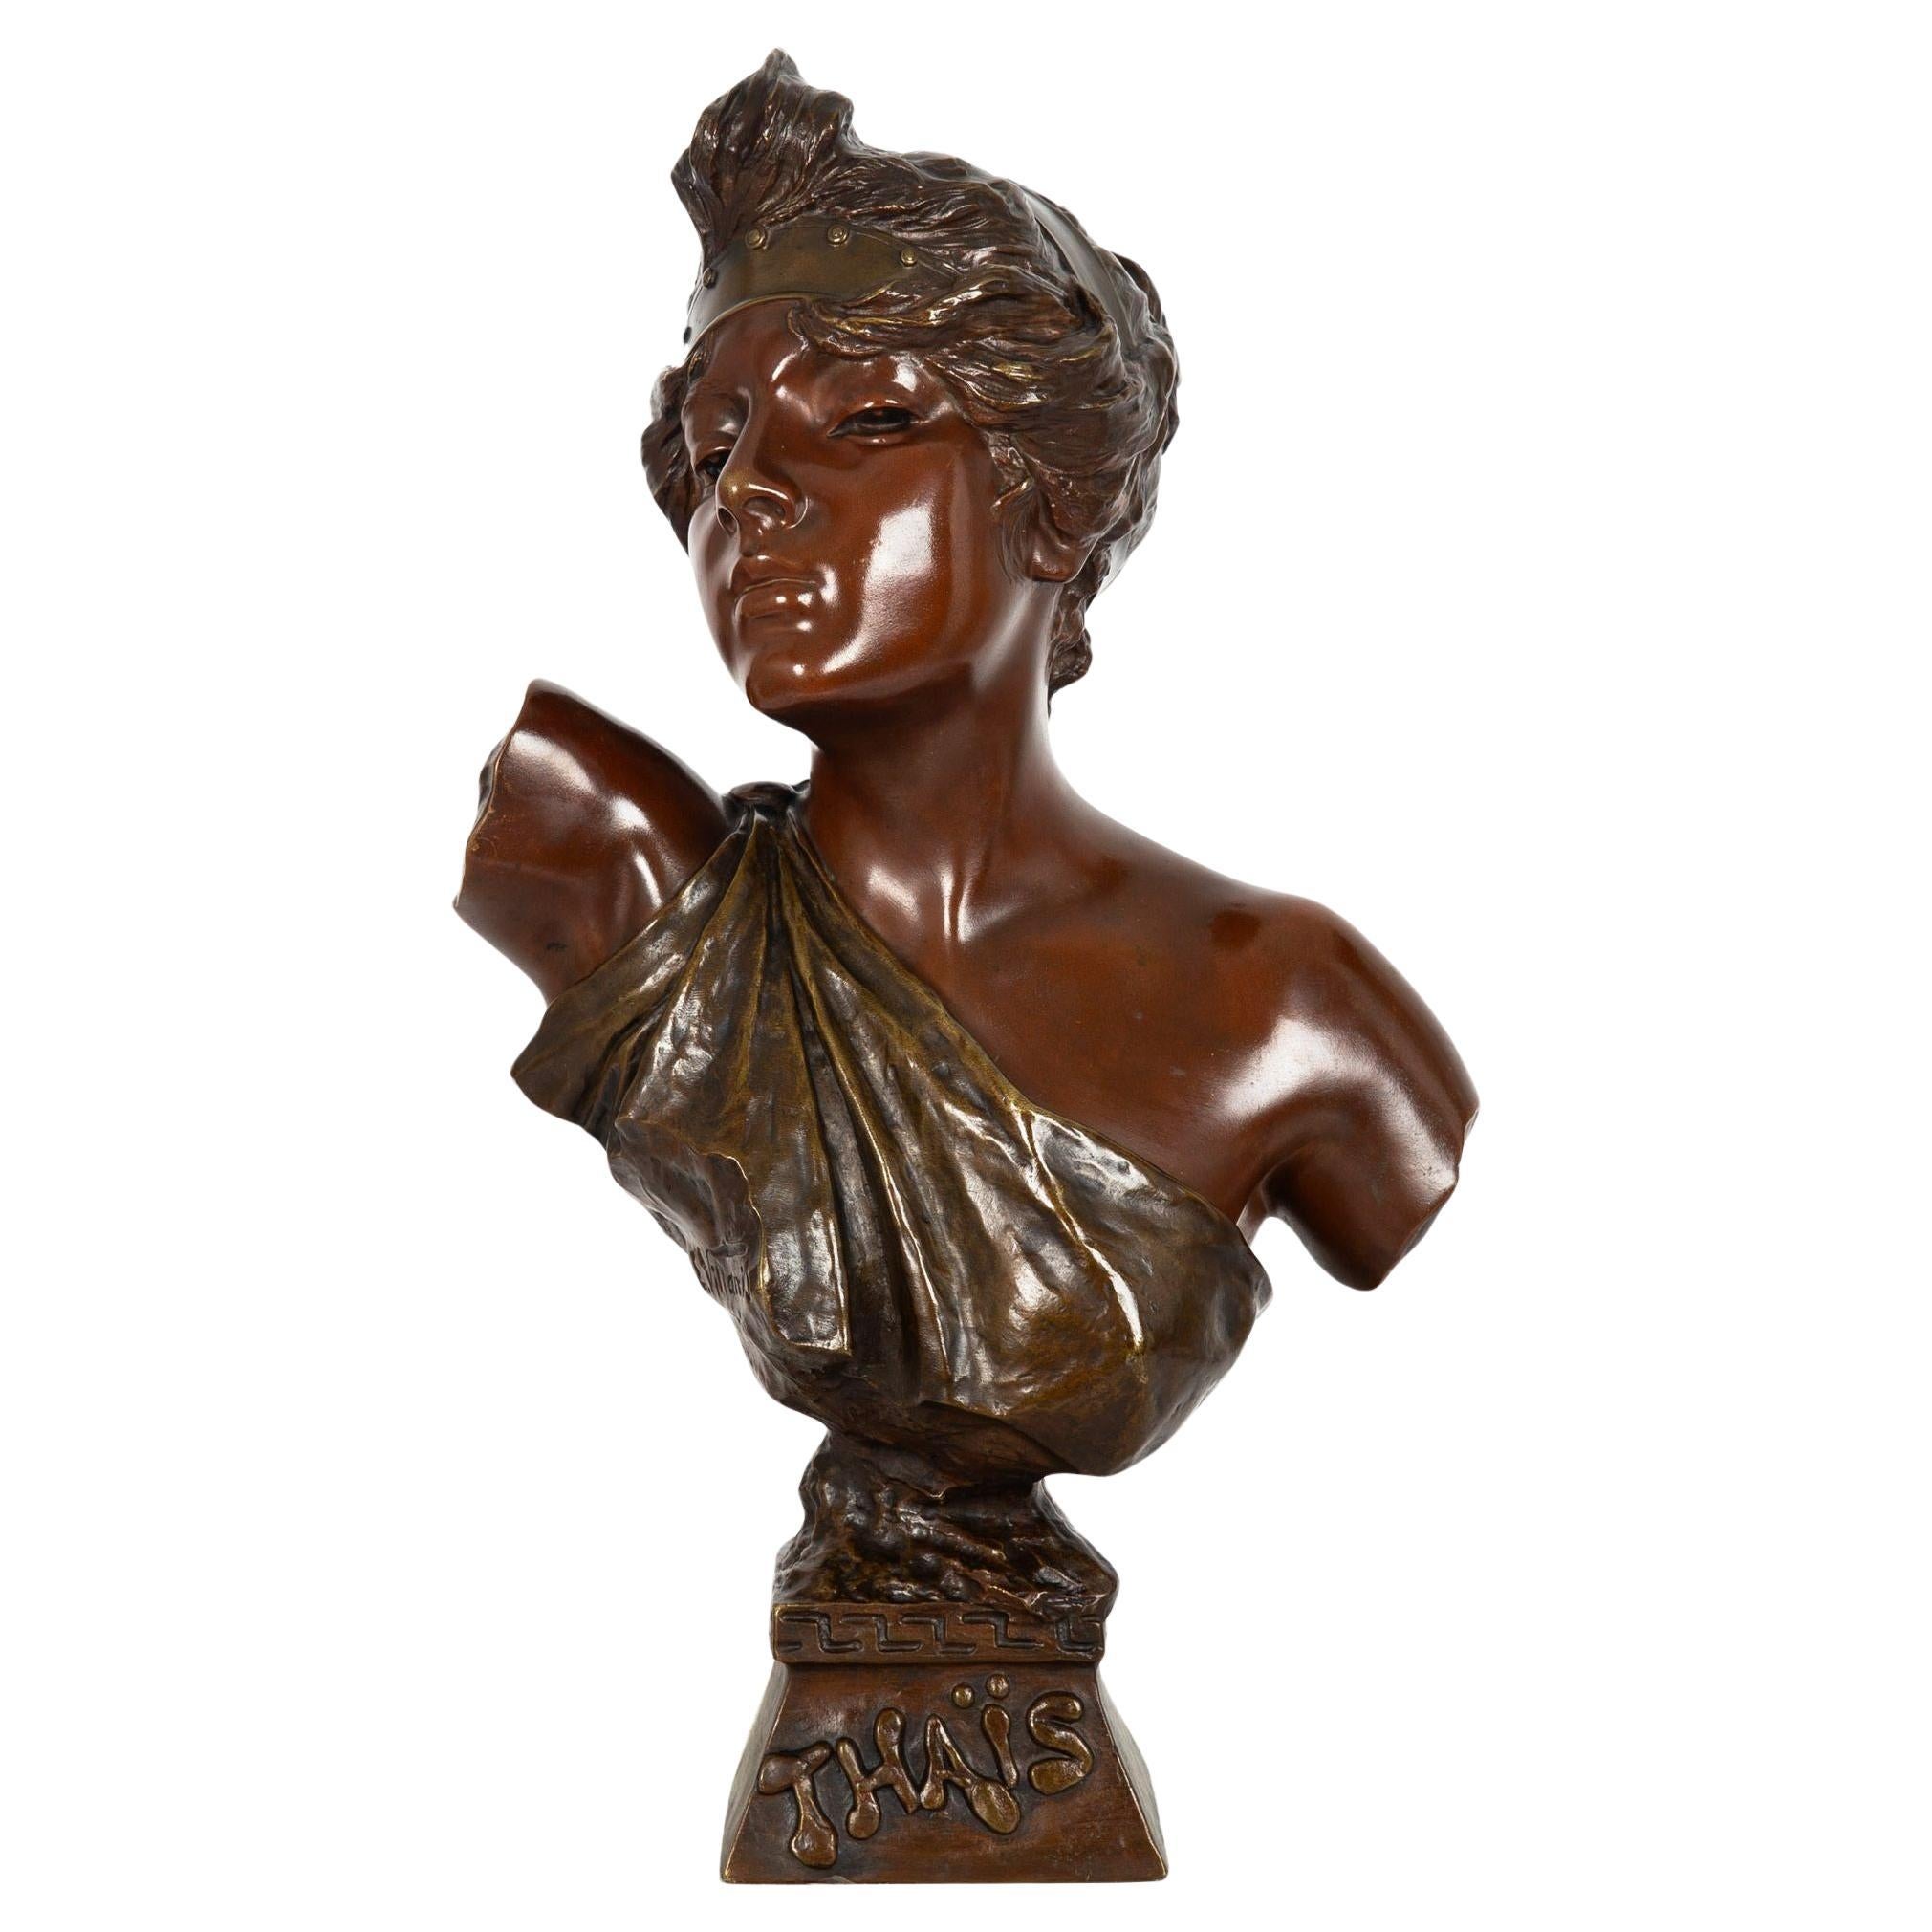 French Art Nouveau Bronze Sculpture “Bust of Thais” by Emmanuel Villanis